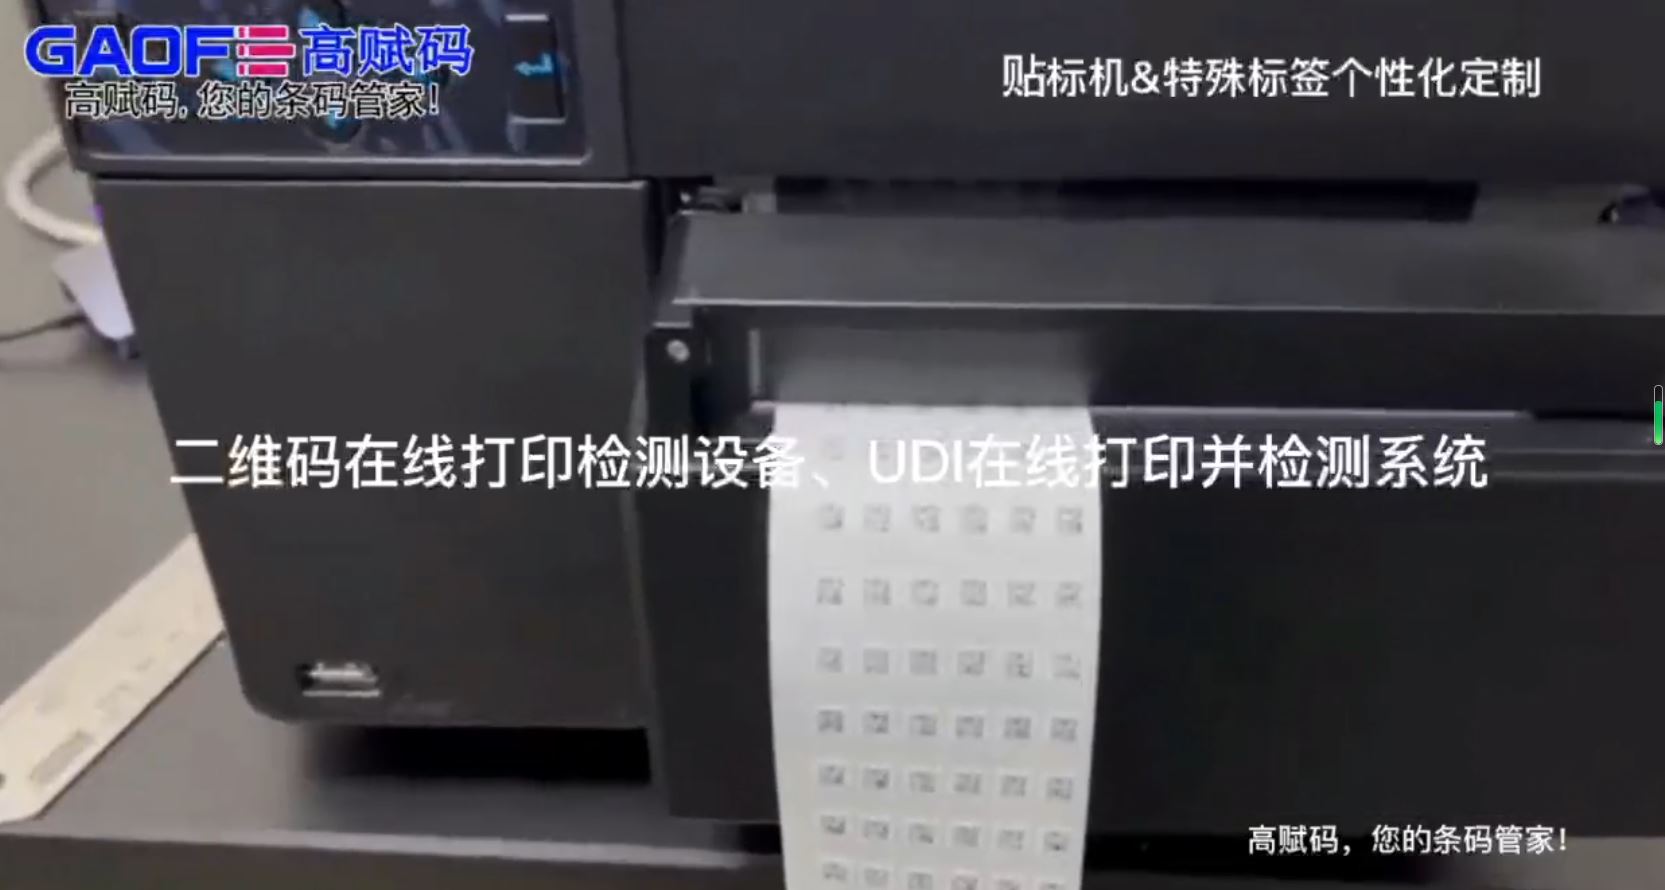 高赋码二维码在线打印检测设备、UDI在线打印并检测系统